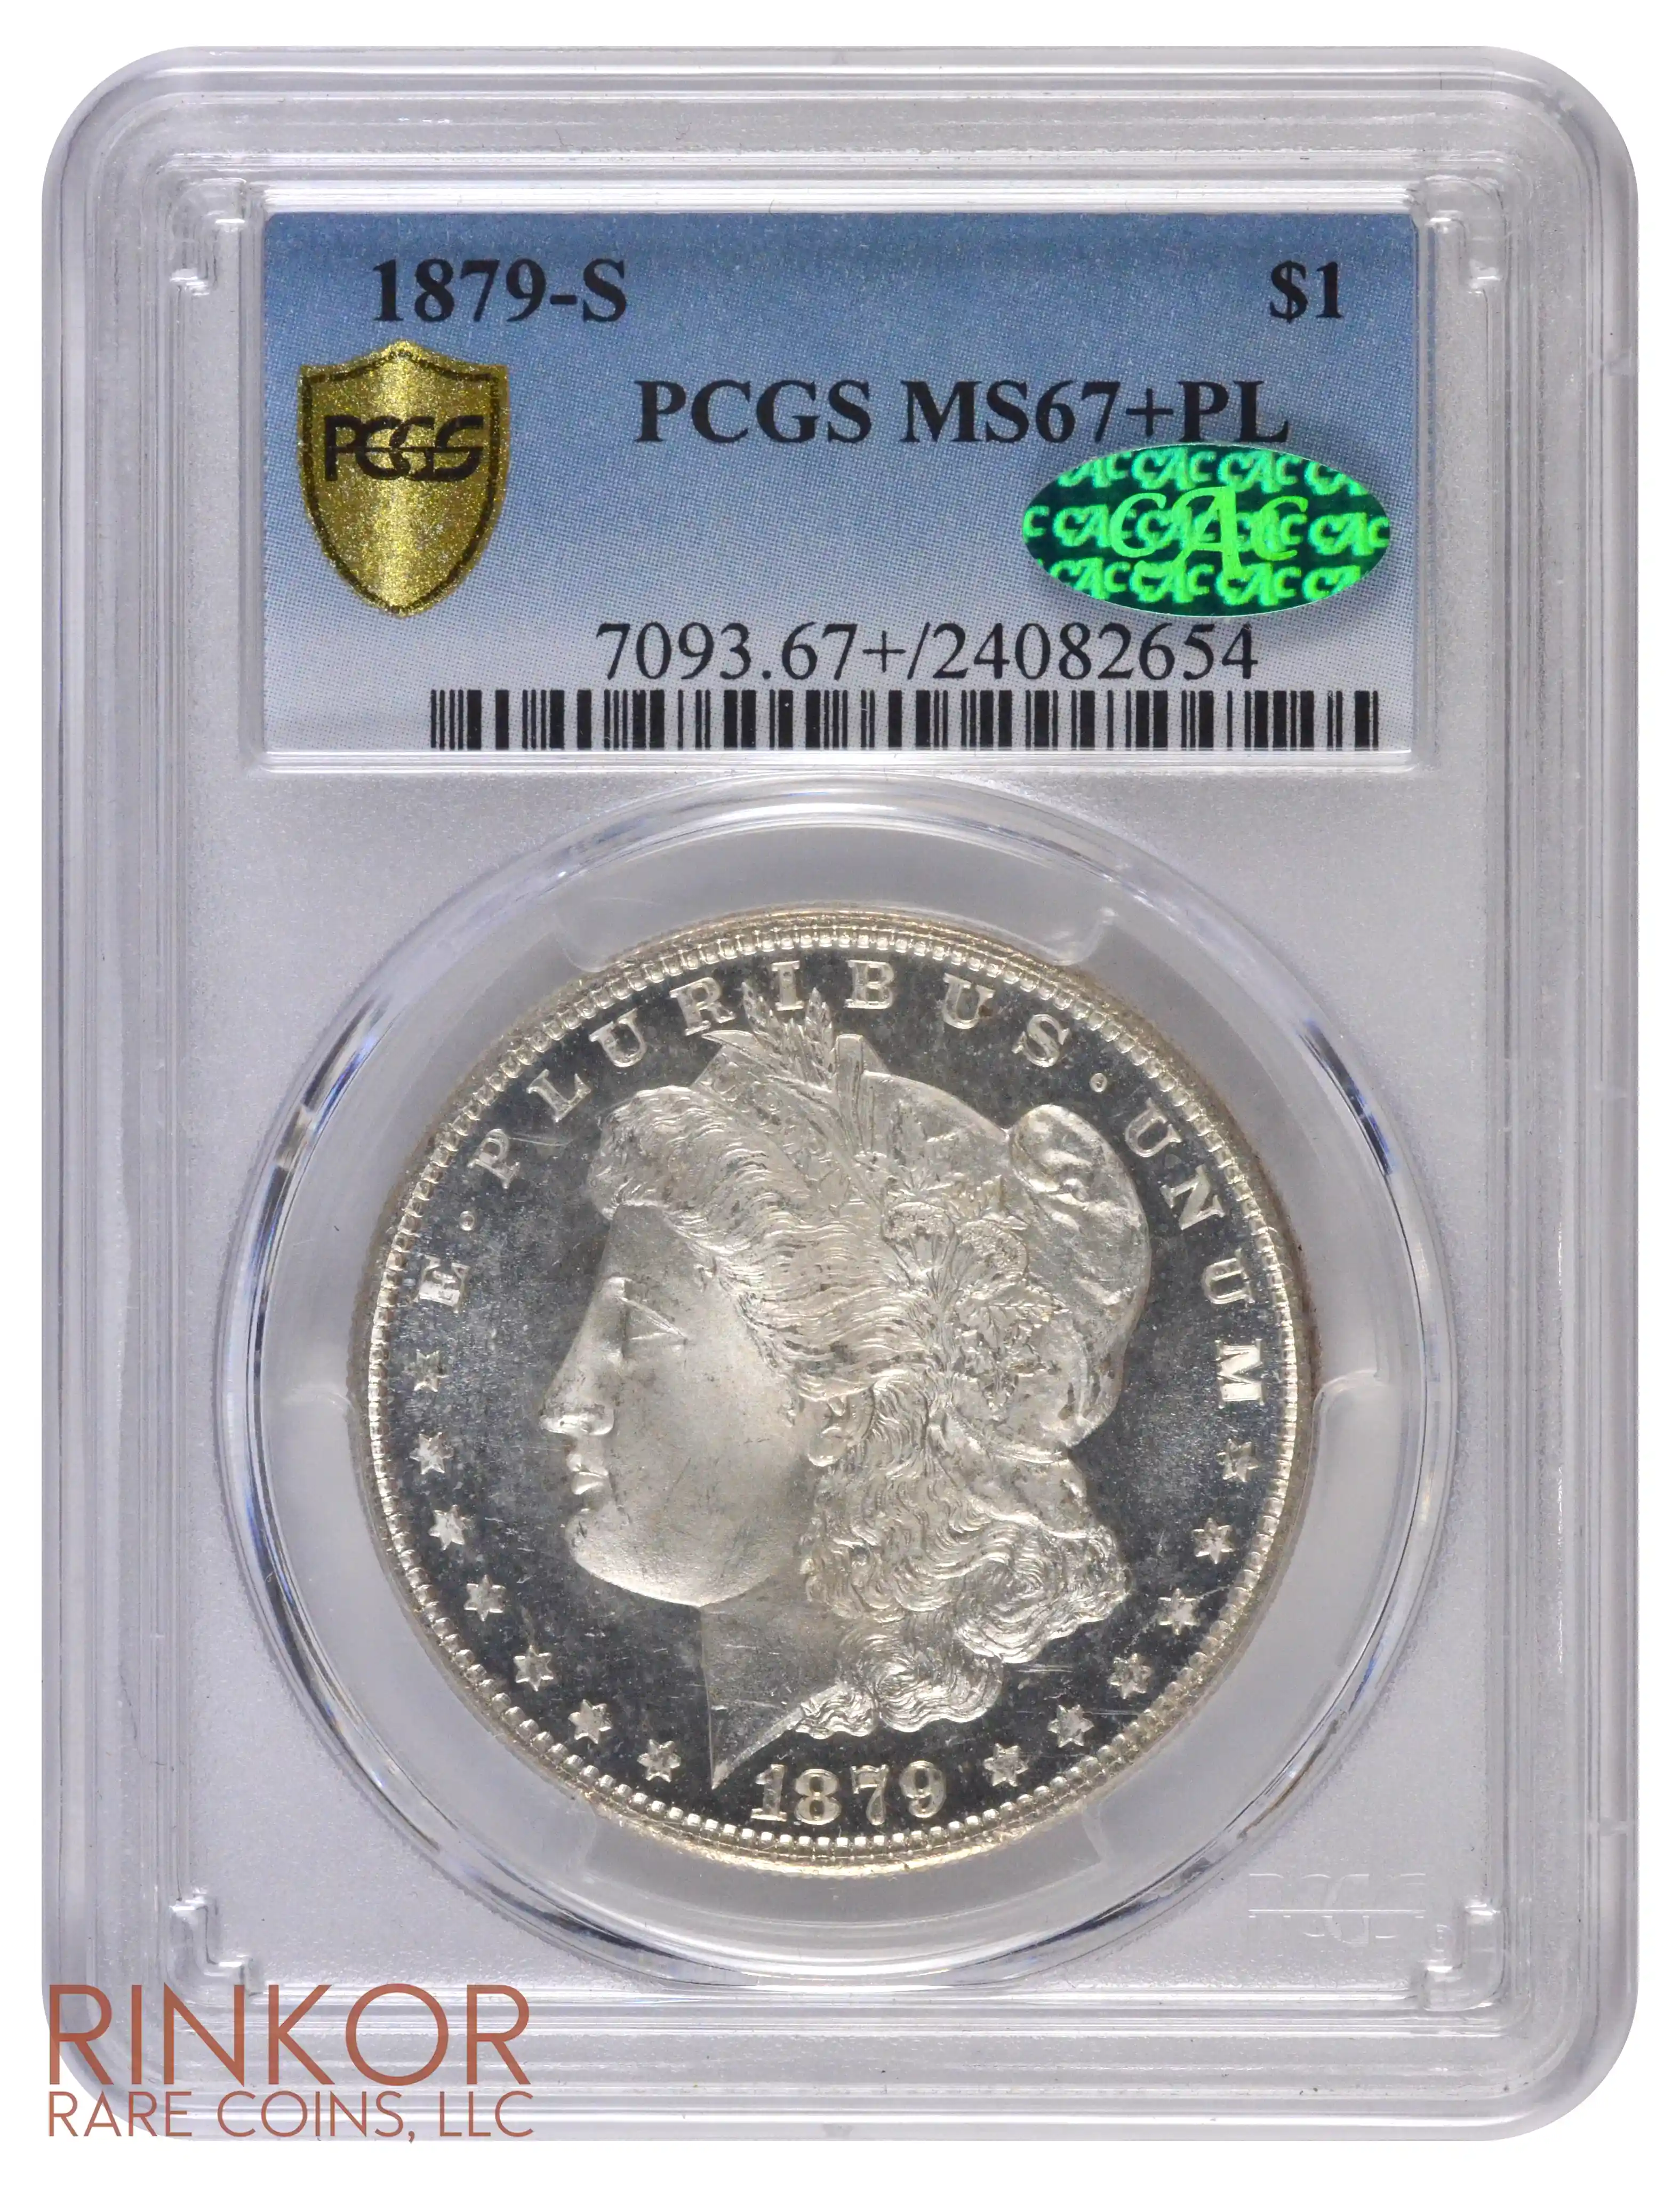 1879-S $1 PCGS